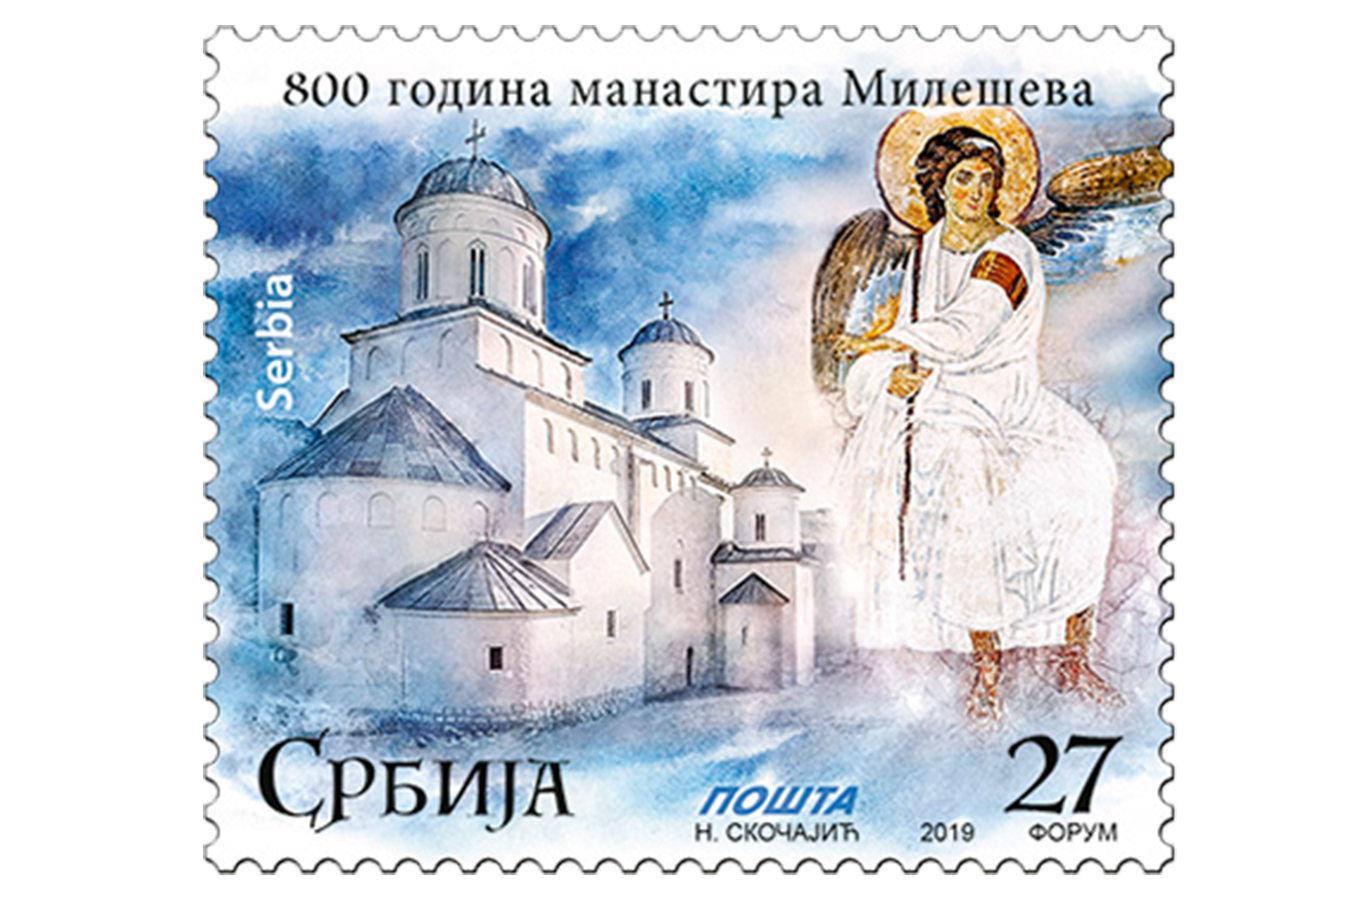 Јубилеј 800 година манастира Милешева: Пошта Србије издала поштанску марку